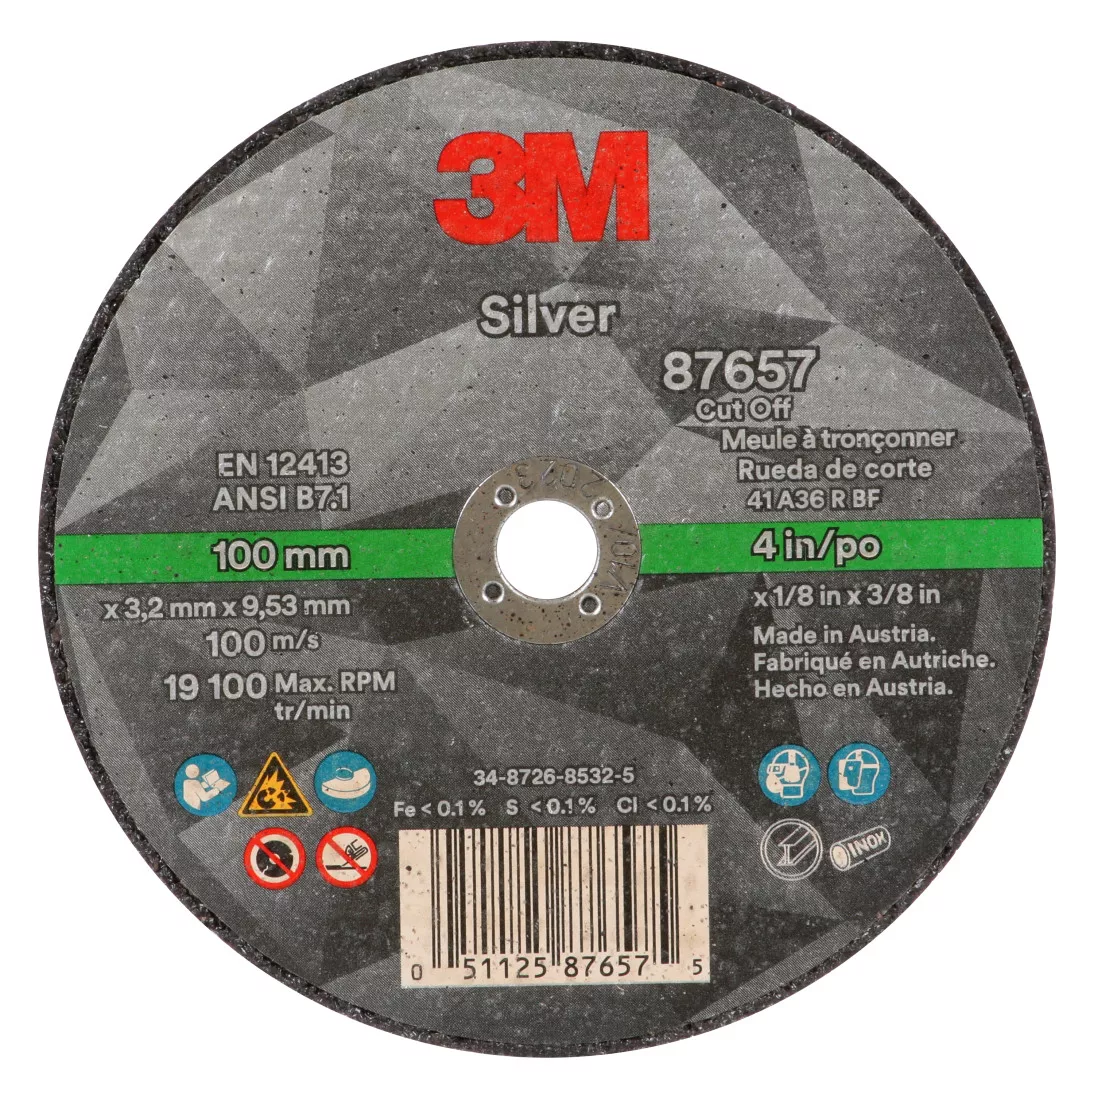 3M™ Silver Cut-Off Wheel, 87657, Type 1, 4 in x 1/8 in x 3/8 in, 25 per inner, 50 per case